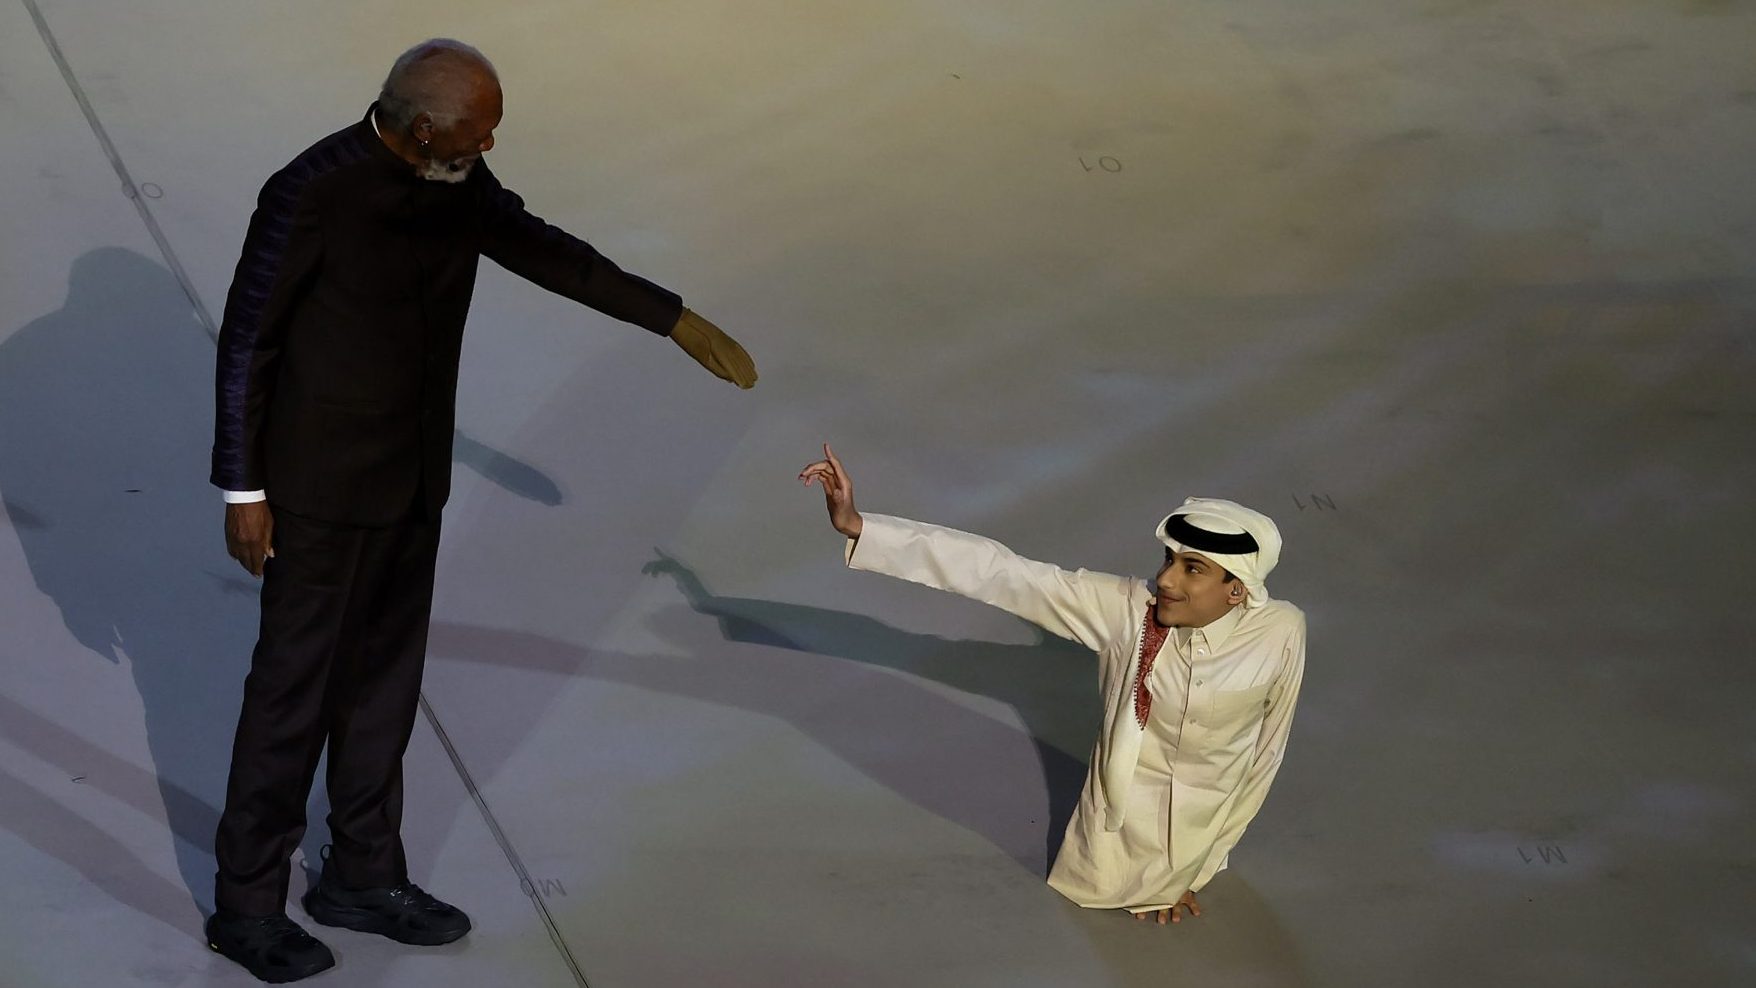 Nakon ceremonije u Kataru, ceo svet se pita, zašto Morgan Friman nosi samo jednu rukavicu na ruci